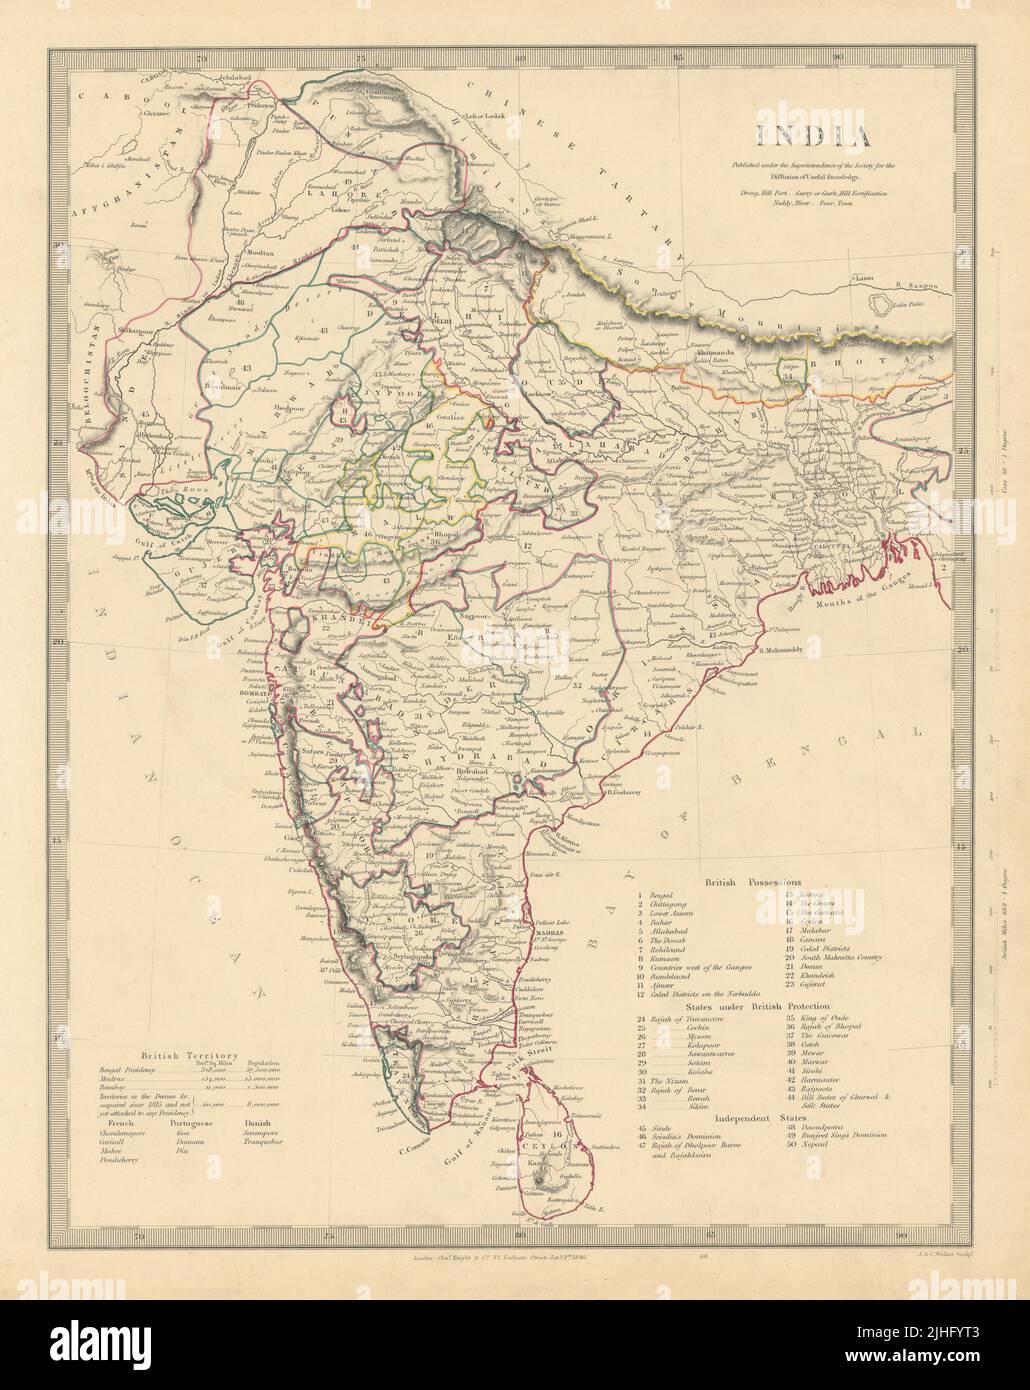 LA INDIA BRITÁNICA. Enumera los estados ingleses, franceses, portugueses y daneses. Mapa SDUK 1851 Foto de stock